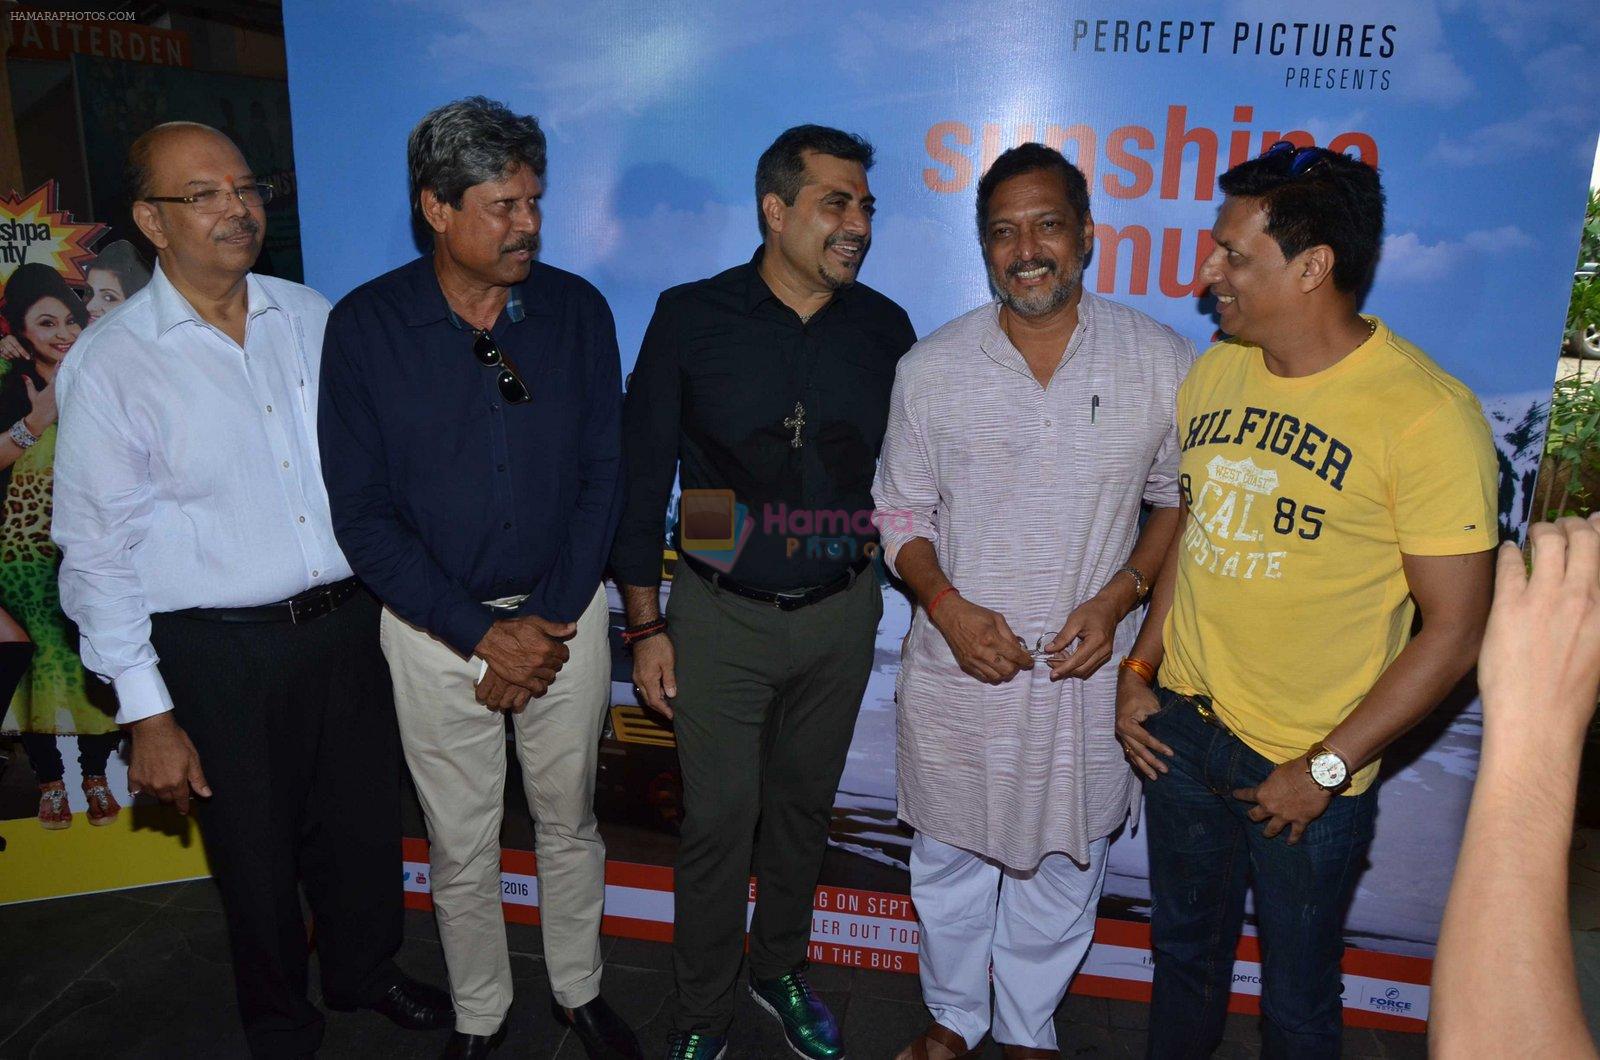 Kapil Dev, Nana Patekar, Shailender Singh, Madhur Bhandarkar at Sunshine Music film meet on 25th July 2016